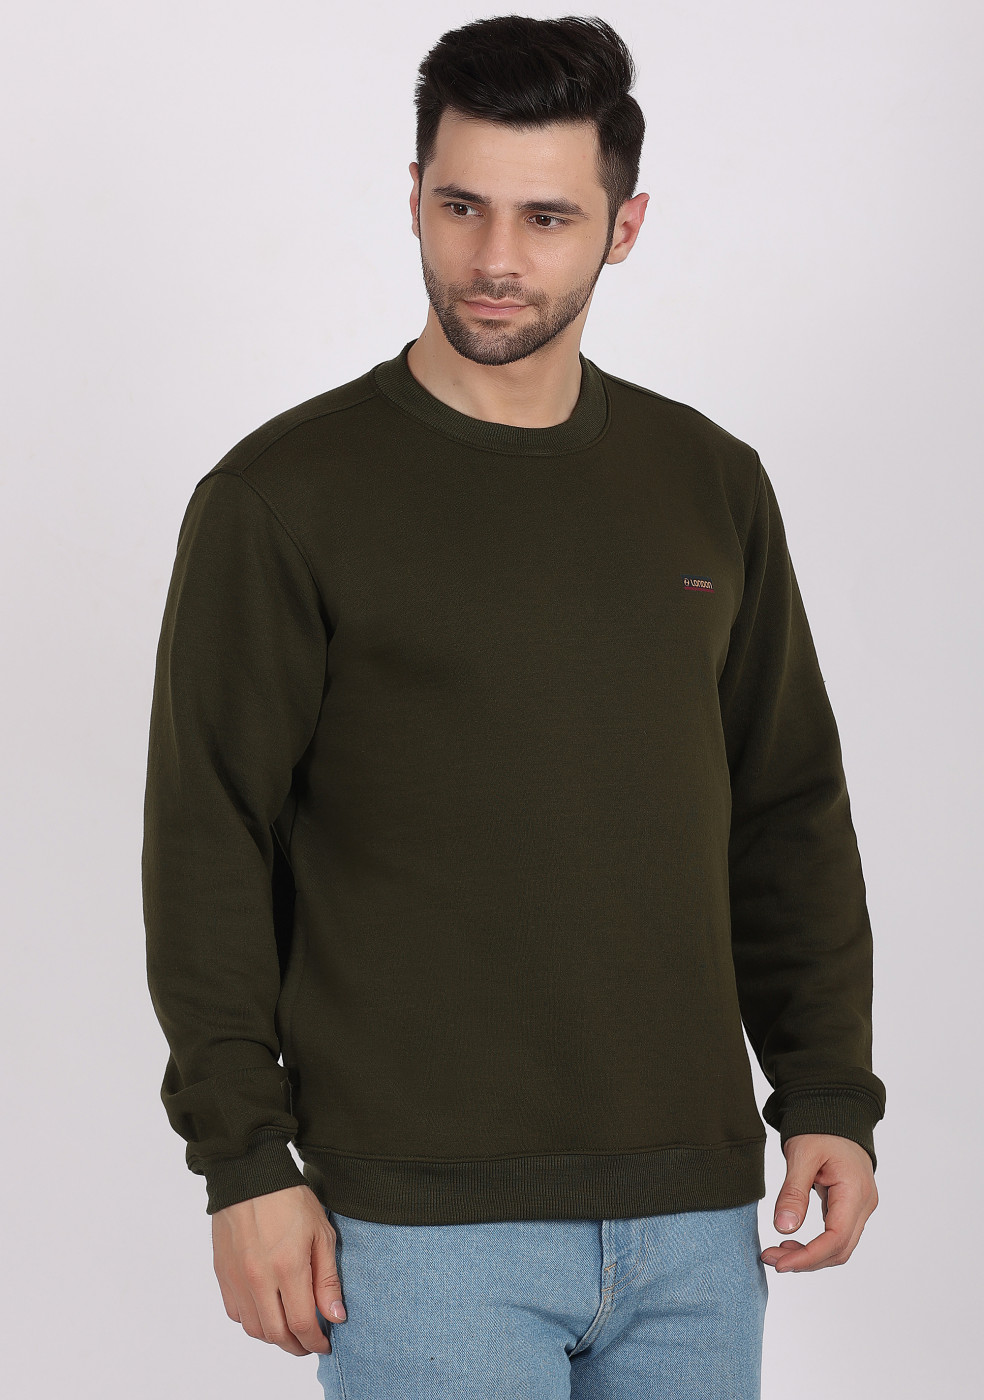 HUKH Olive Color Sweatshirt For Men